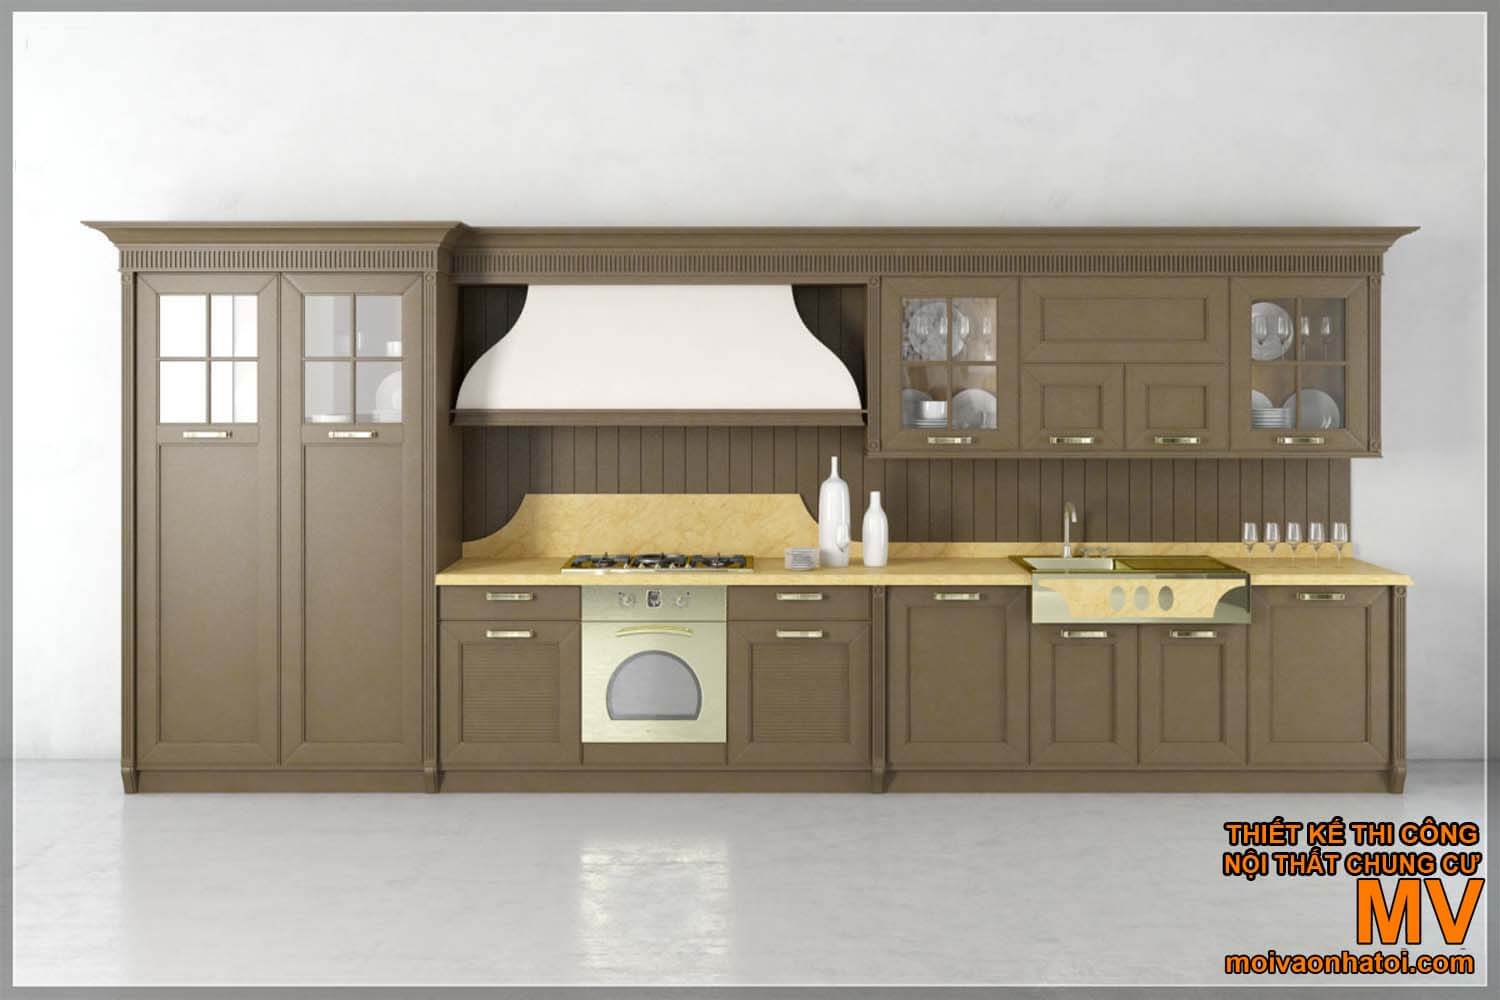 armários de cozinha de madeira industrial